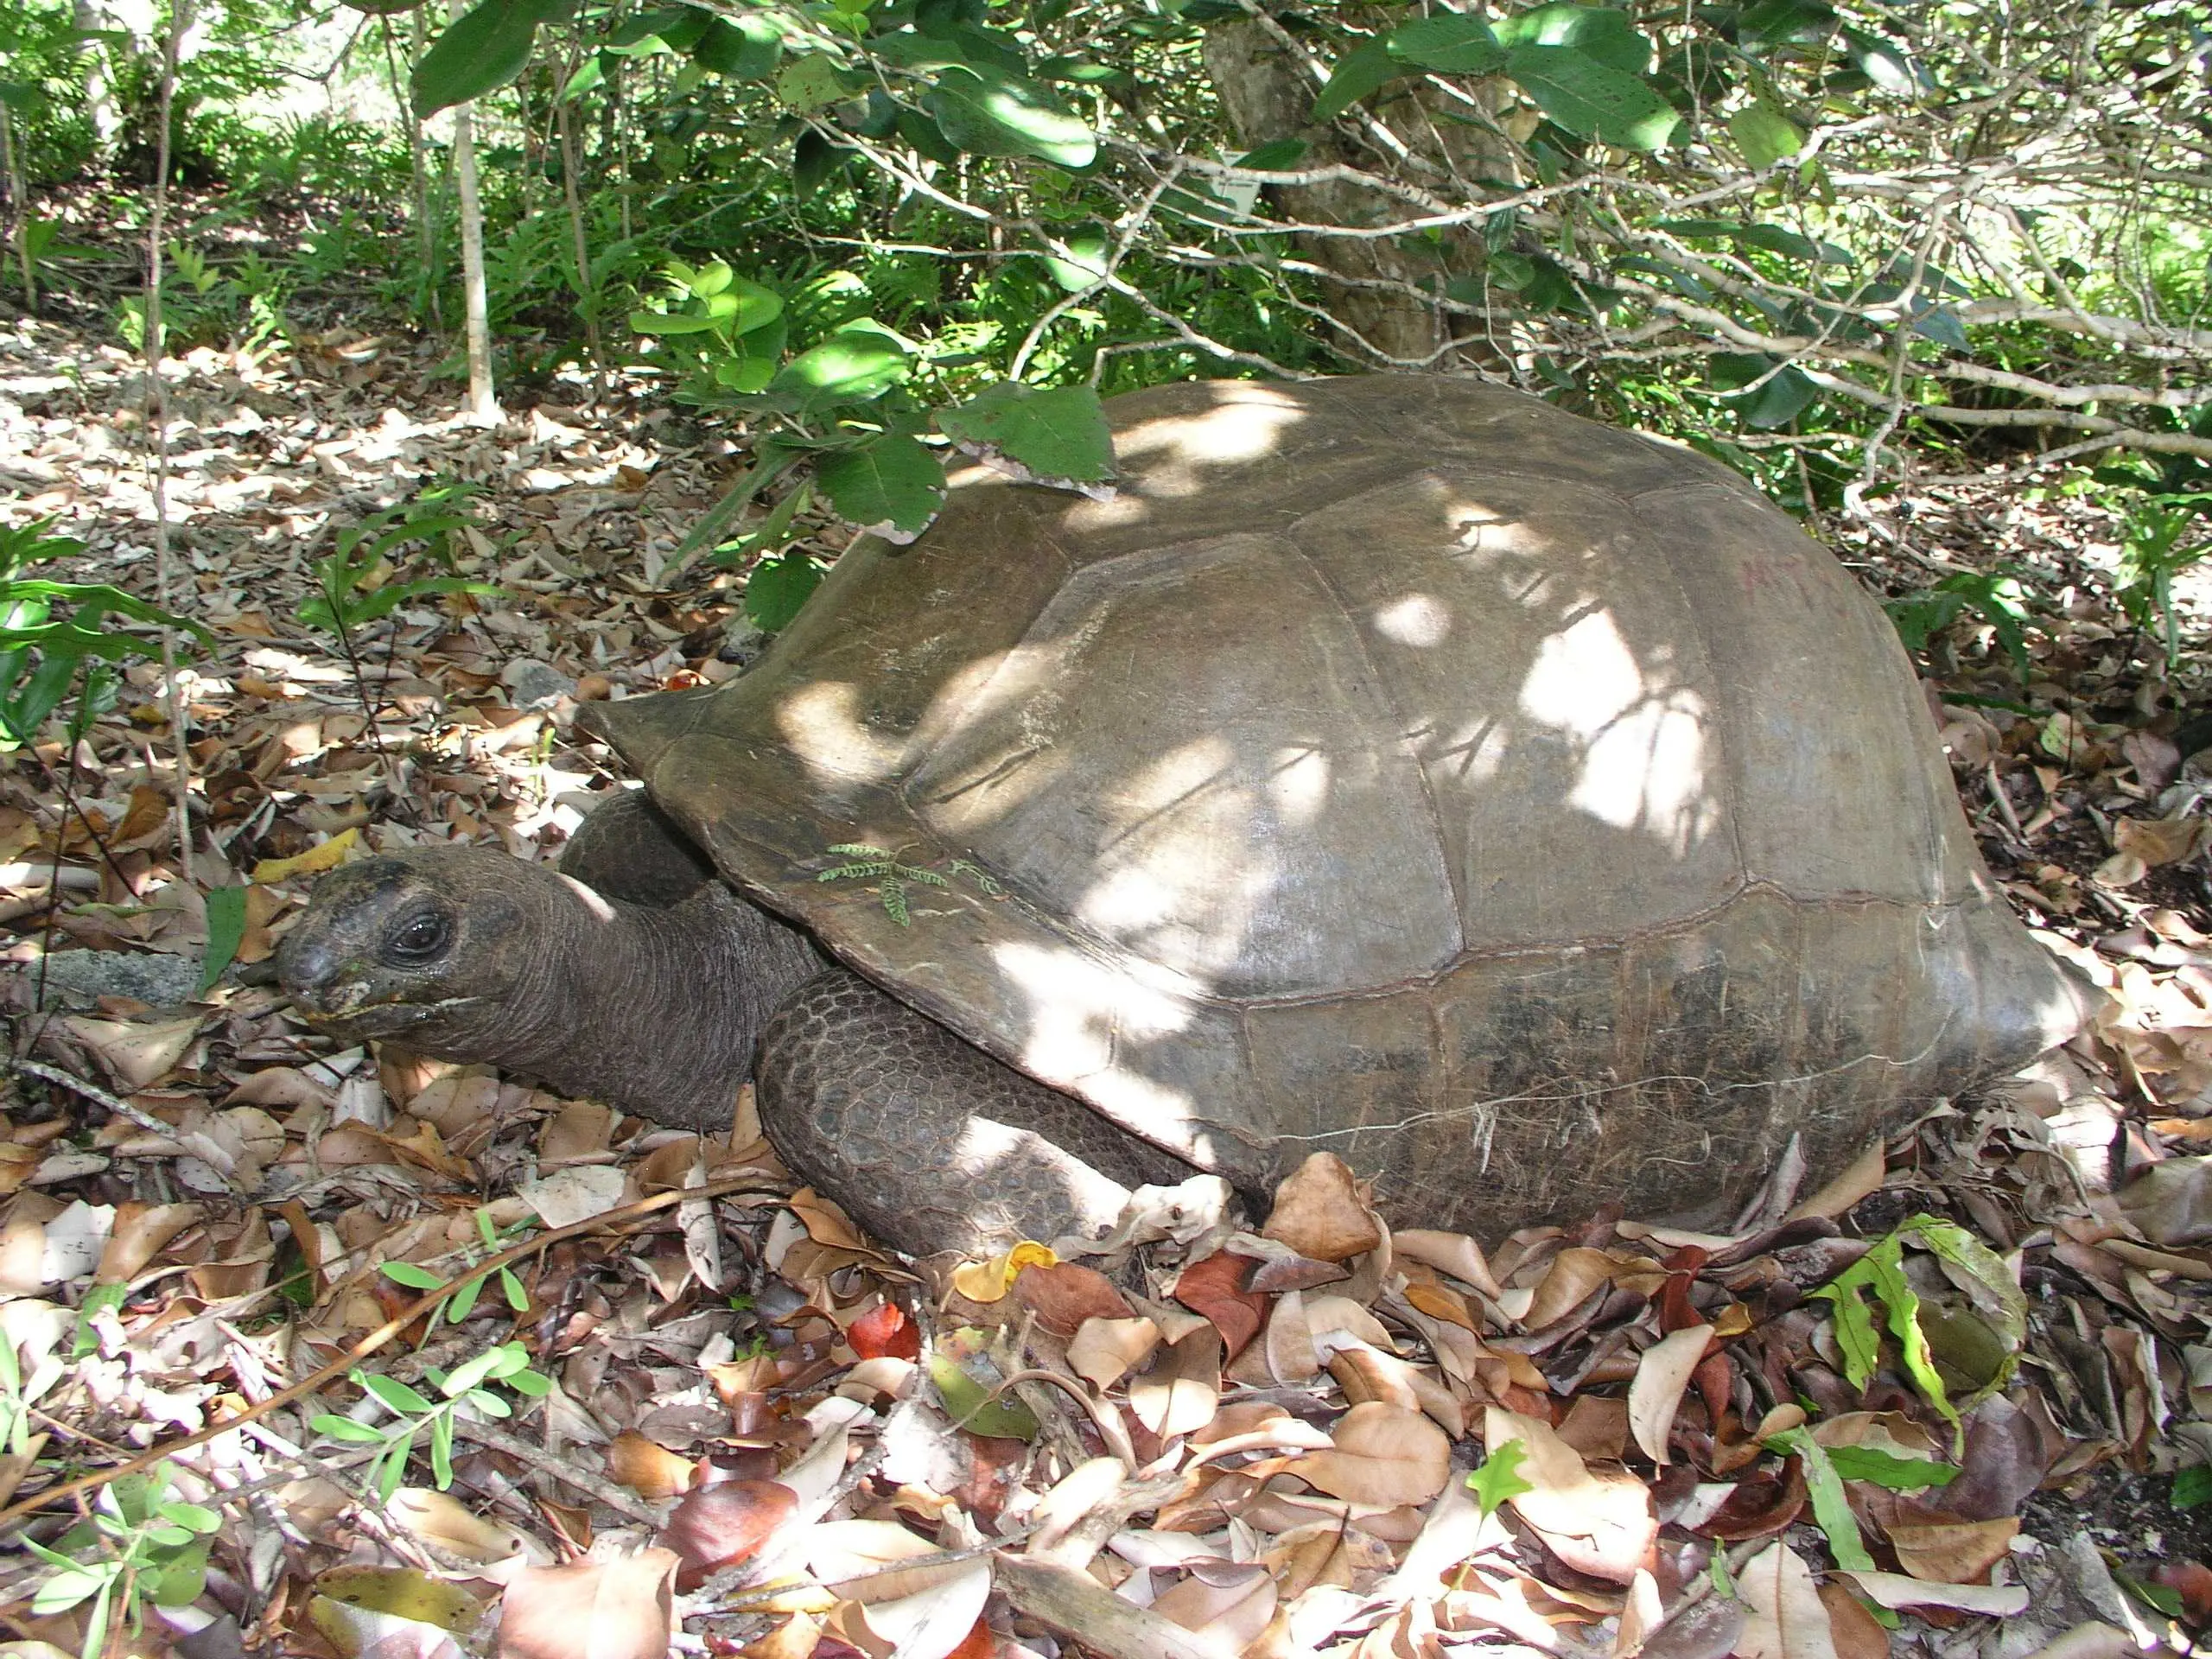 Aldabran giant tortoise on Ile aux Aigresstes, Mauritius